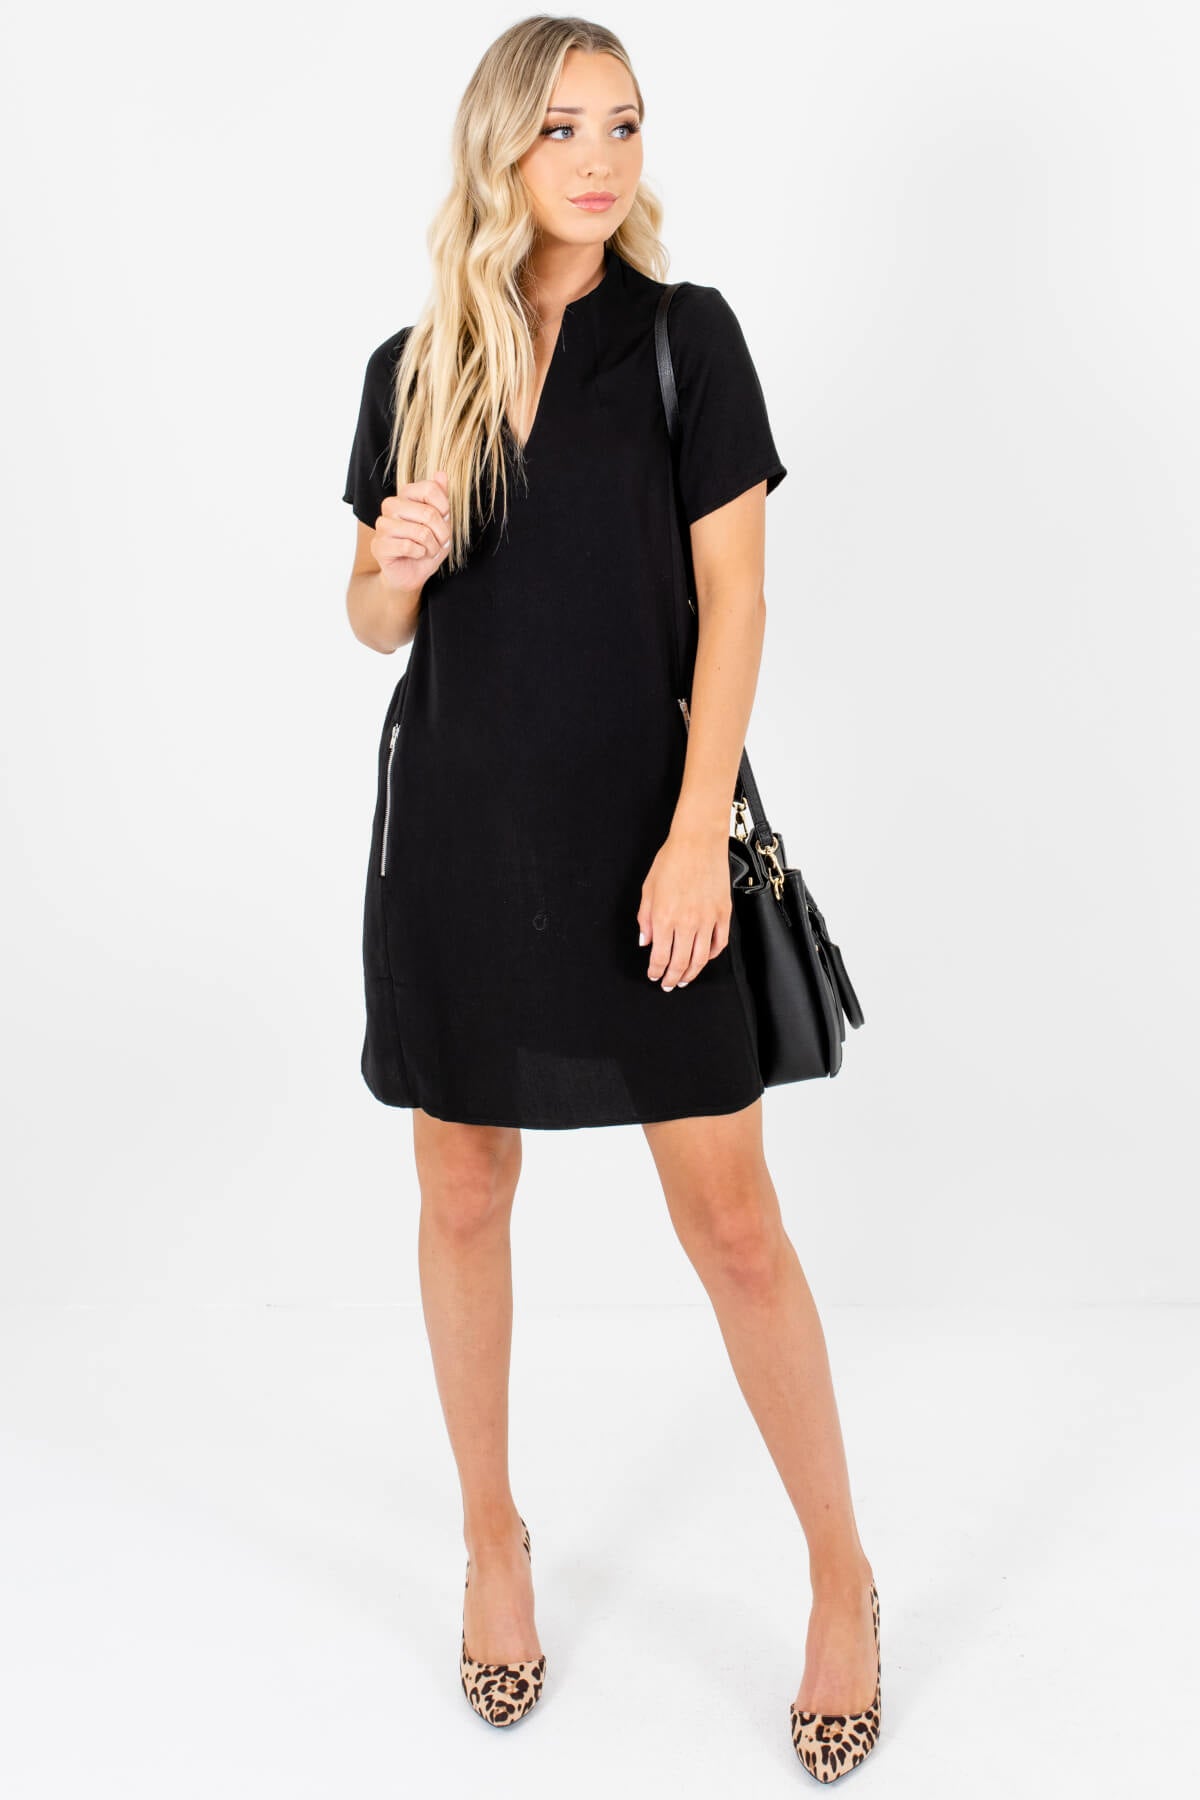 Black Straight Silhouette Zipper Mini Dresses for Women